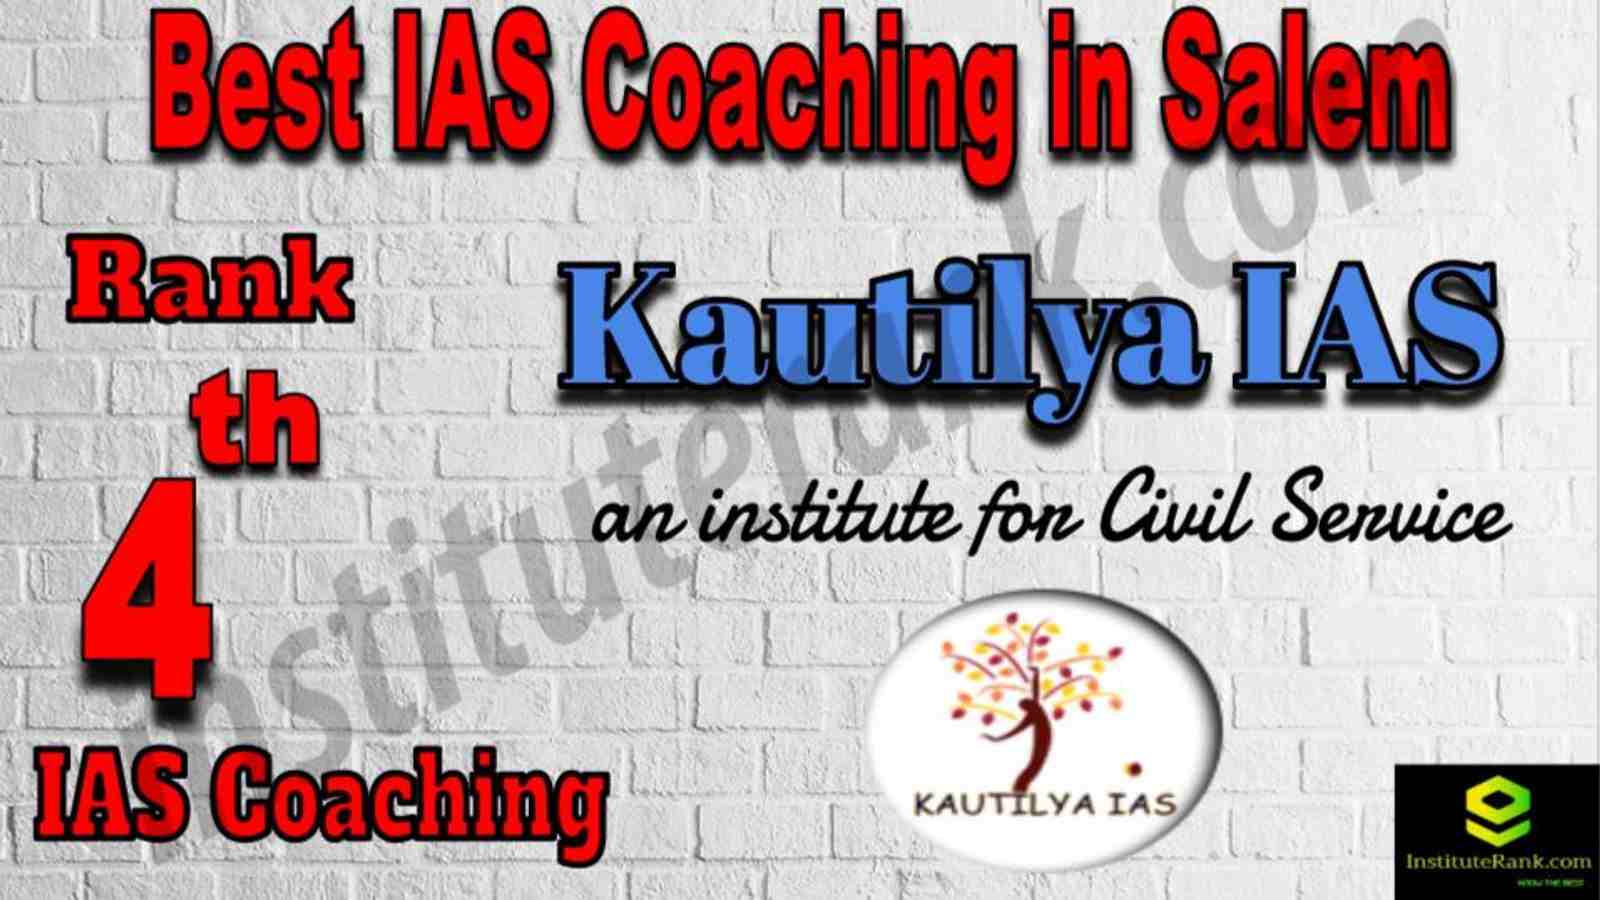 4th Best IAS Coaching in Salem